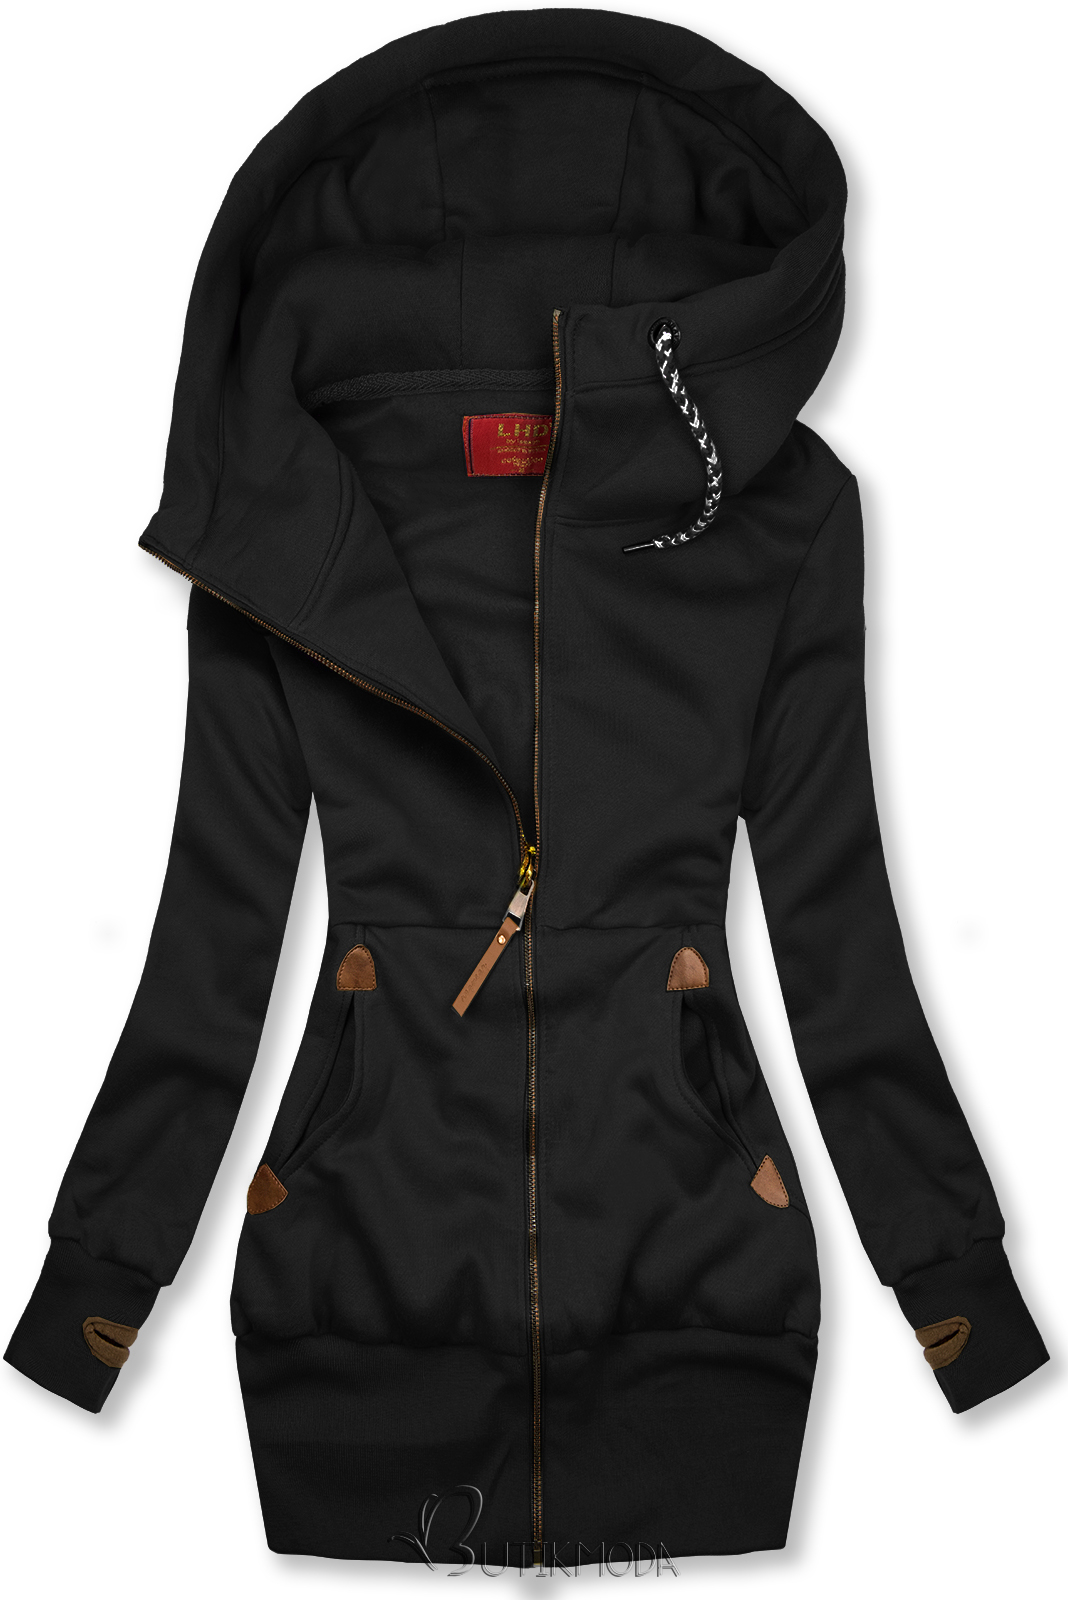 Basic elongated hoodie in black